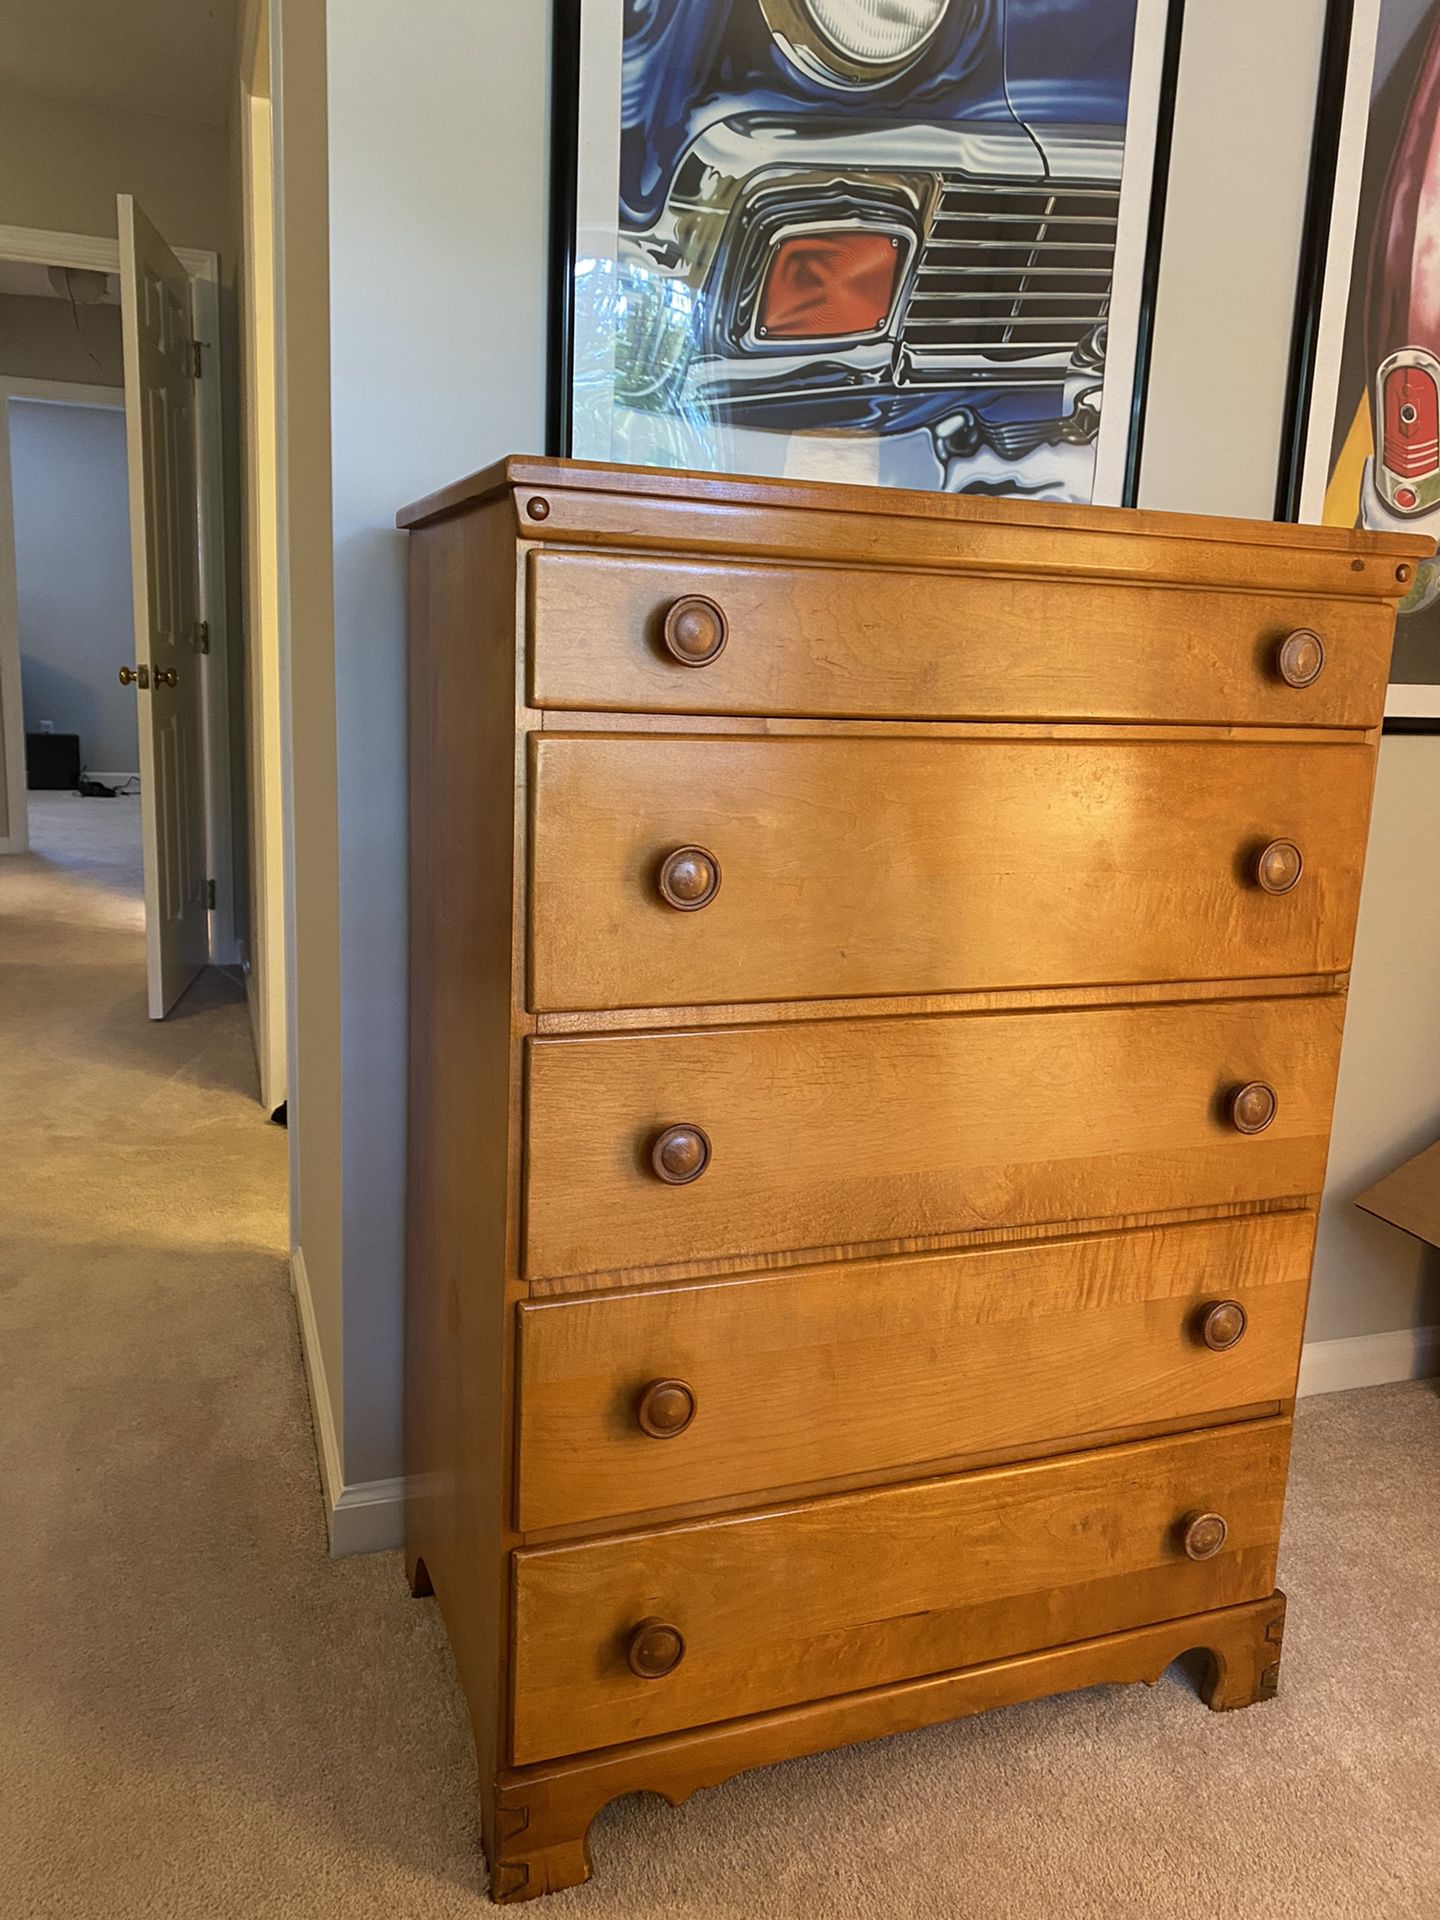 Solid Maple Wood Dresser - Chest of Drawers - Bedroom Furniture - Bedroom Dresser